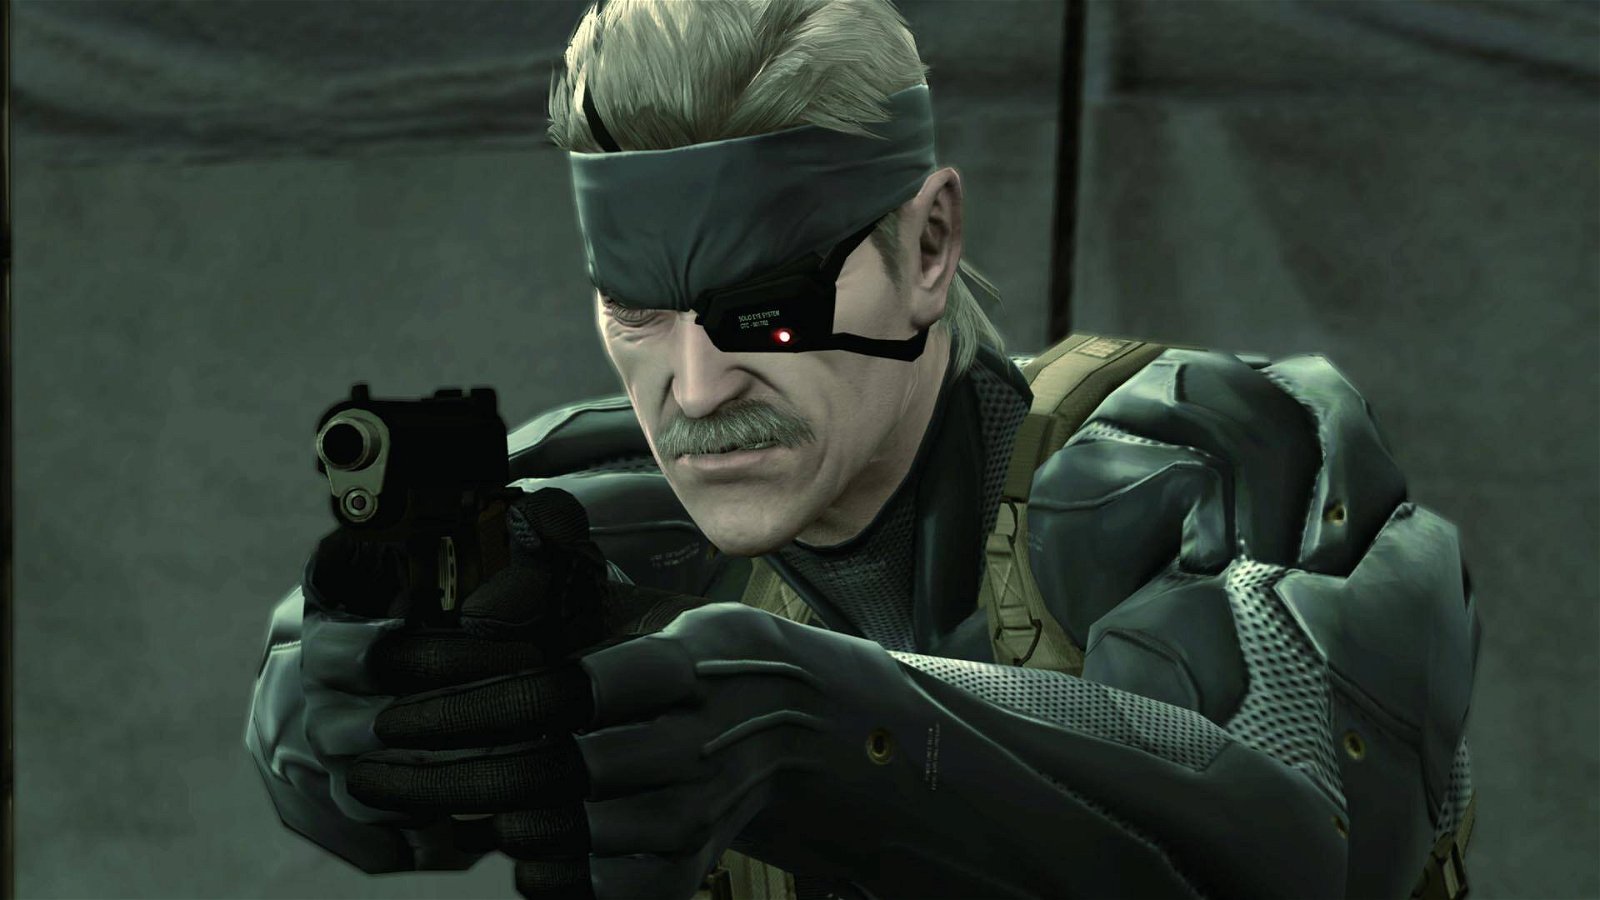 Metal Gear Solid 4 non è una "esclusiva" PlayStation: ecco perché non uscì su Xbox